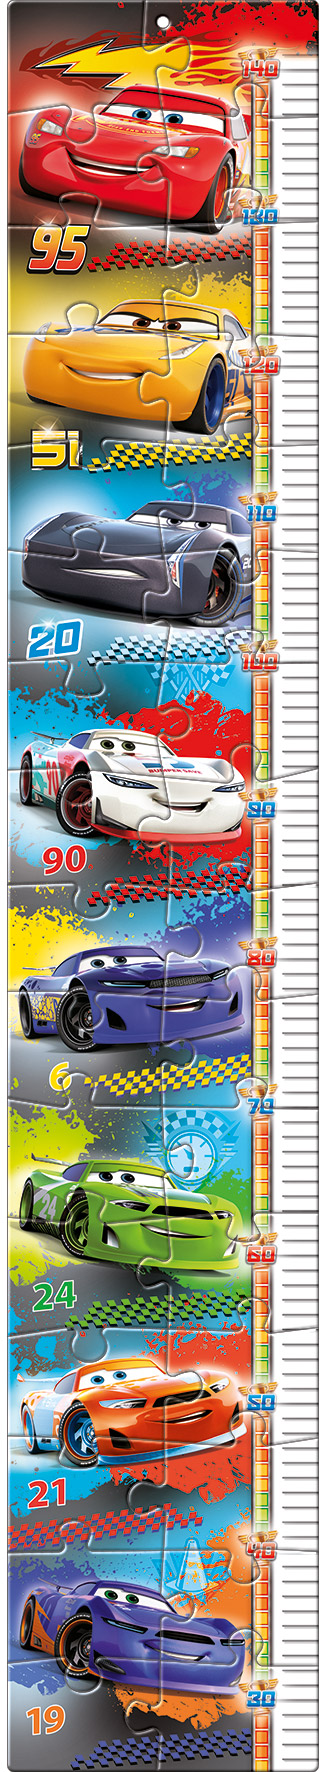 Puzzle "Metro Maxi" 30 piezas -Cars 3- Clementoni